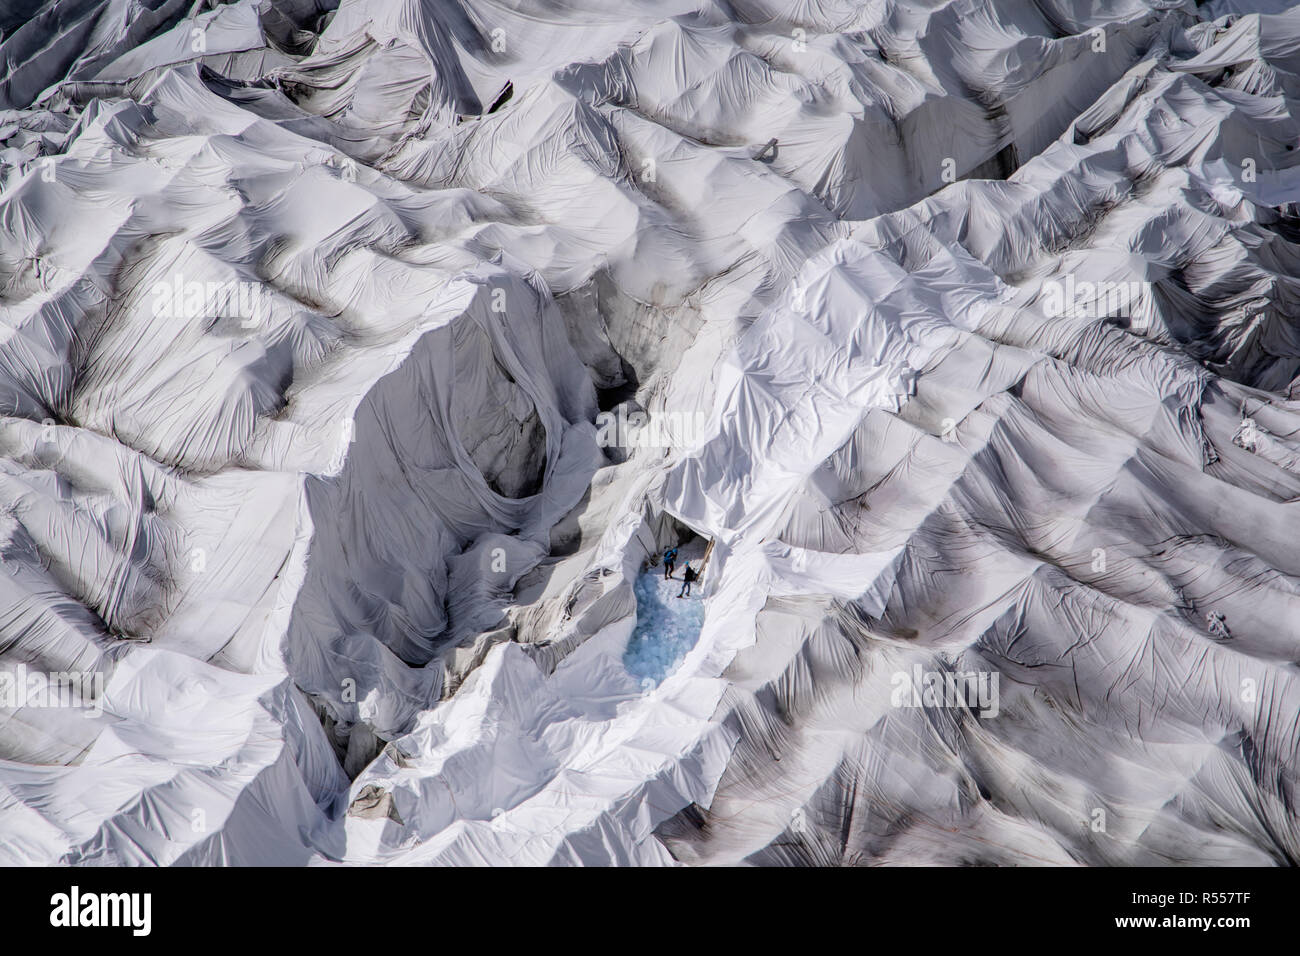 Zwei Personen sind am Eingang einer Gletschereishöhle an der Mündung des Rhonegletschers in der Schweiz zu sehen. Die Eishöhle und der umgebende Gletscher werden jedes Jahr mit riesigen Fleecedecken bedeckt, um das unvermeidliche Schmelzen des Gletschers aufgrund des wärmeren Klimas zu verlangsamen. Der Gletscher ist seit den 1870er Jahren eine beliebte Touristenattraktion und verschwindet nun schnell. Mit höheren mittleren Temperaturen und fehlenden Niederschlägen schrumpft der Rhonegletscher dramatisch. Ein außergewöhnlich schneereichen Winter reichte nicht aus, um den extremen Sommer auszugleichen, der Gletscher 2.5 % ihres Volumens verlor, t Stockfoto